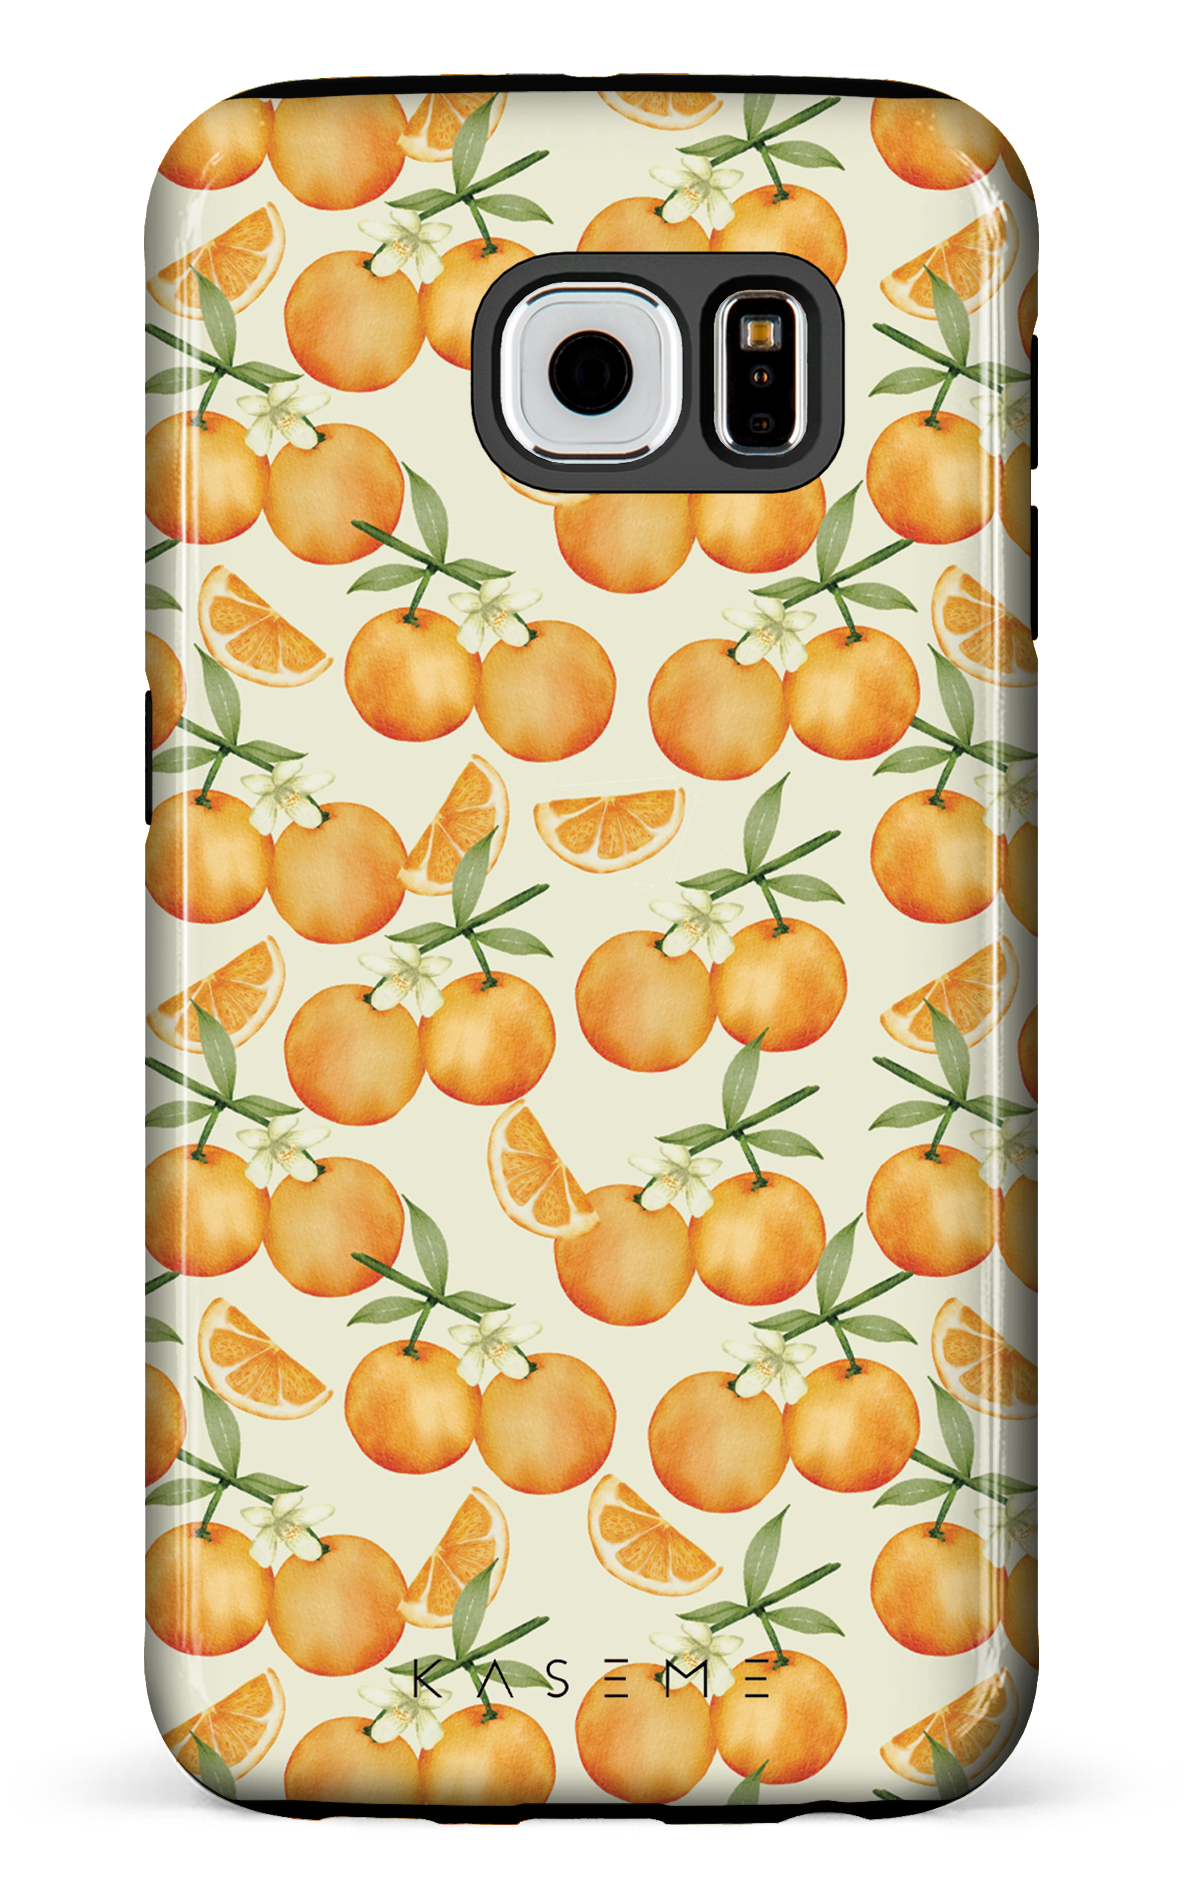 Tangerine - Galaxy S6